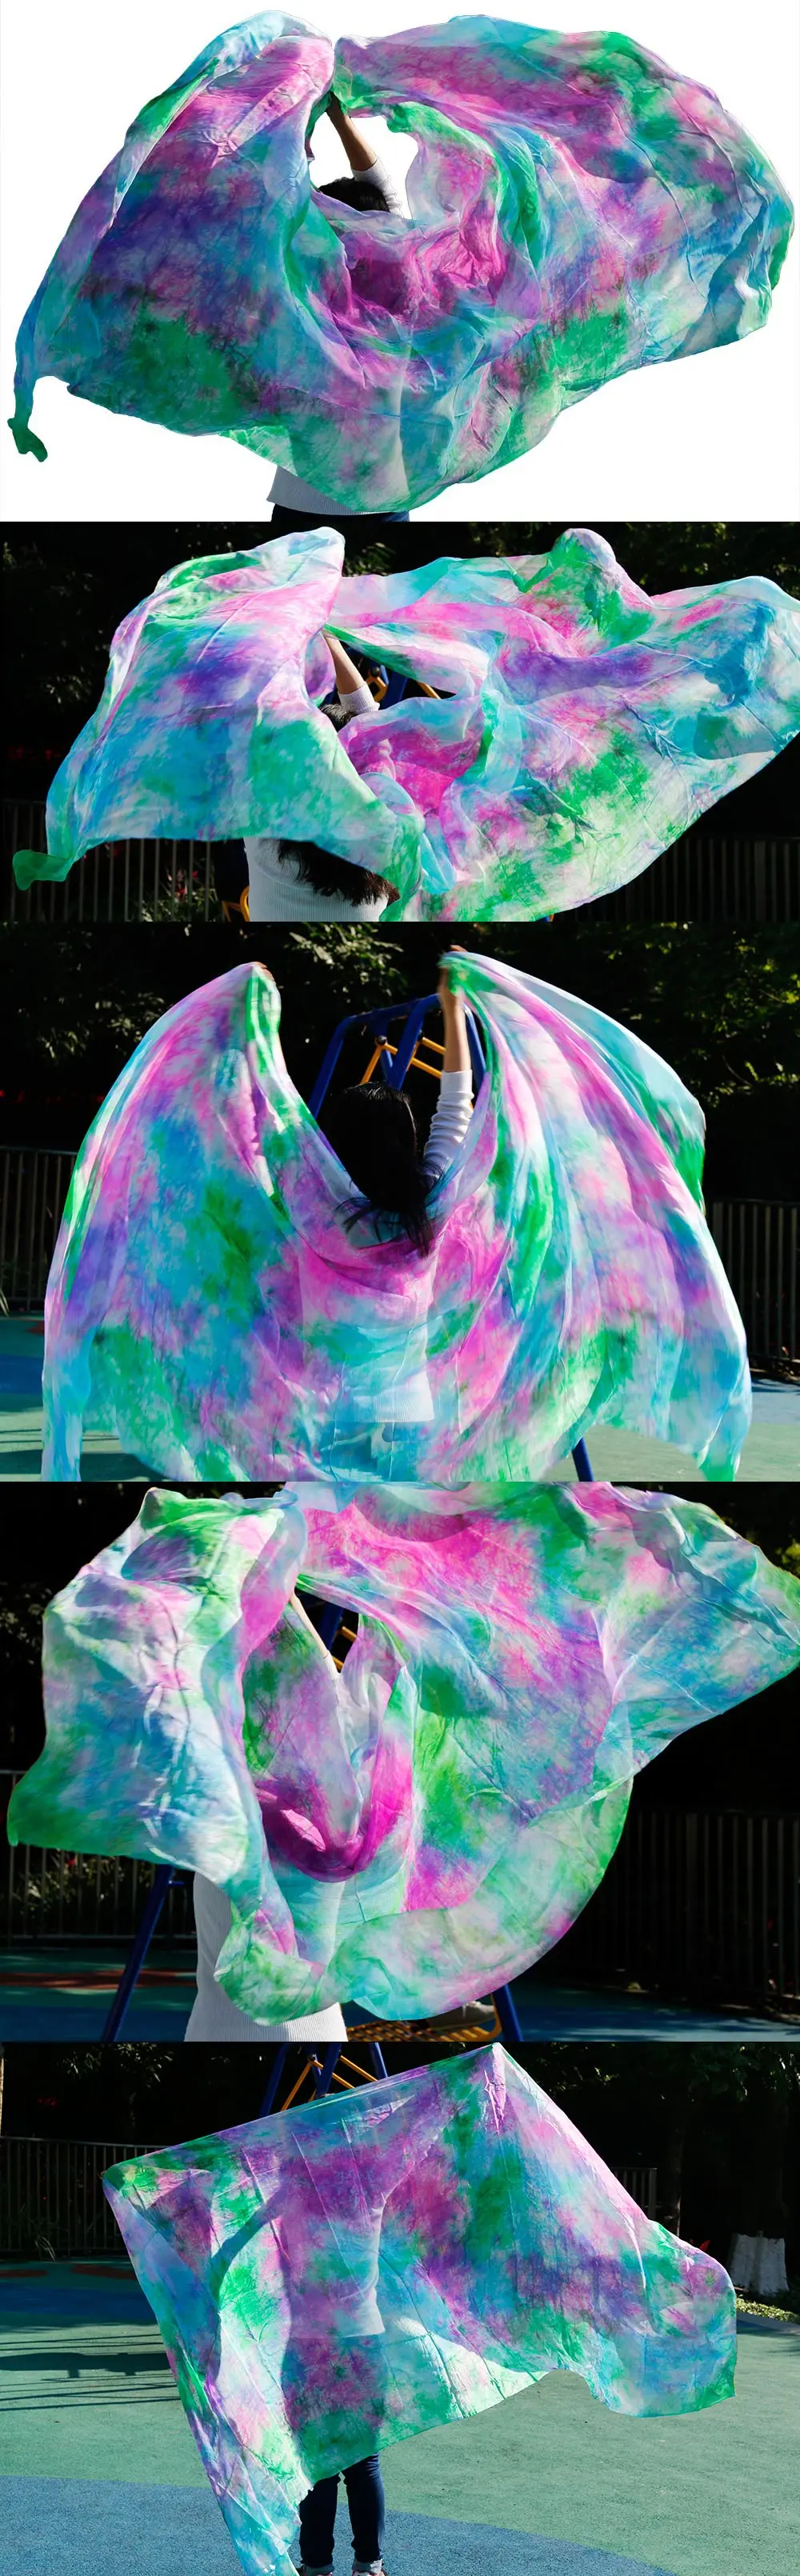 2016 дизайн 100% натуральный шелк танец живота вуаль, дешевые танцевальные вуали, Тари перут kostum вуаль оптовая продажа 250*114 см смешивания цвет